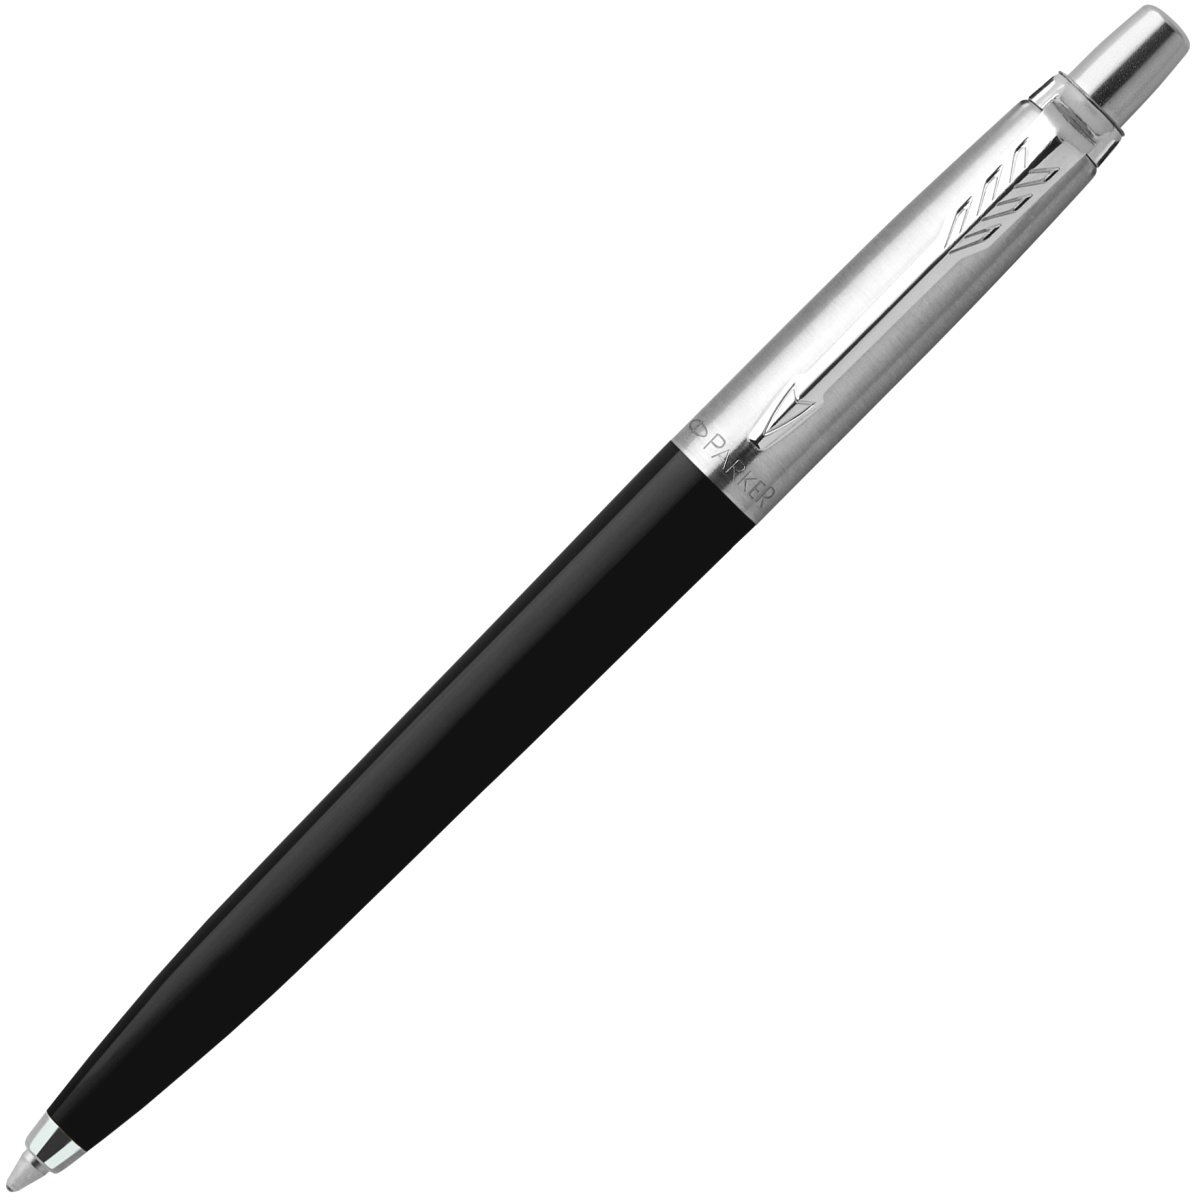  Набор: глевая ручка Parker Jotter Original + черные гелевые стержни 5шт толщина линии (M - 0,7мм), блистер, фото 2